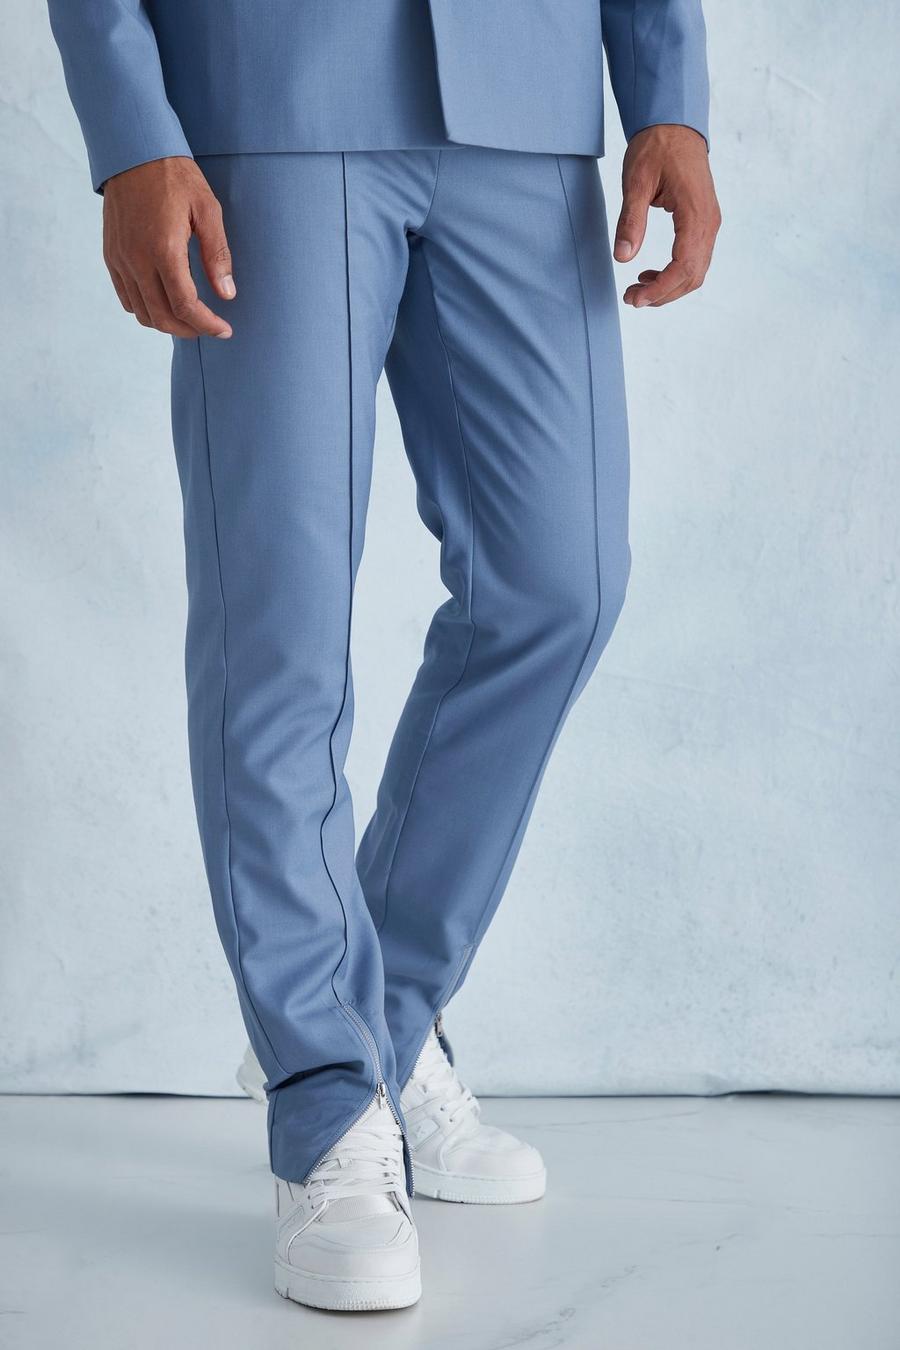 כחול מאובק azzurro מכנסיים בגזרת רגל ישרה עם רוכסן במכפלת